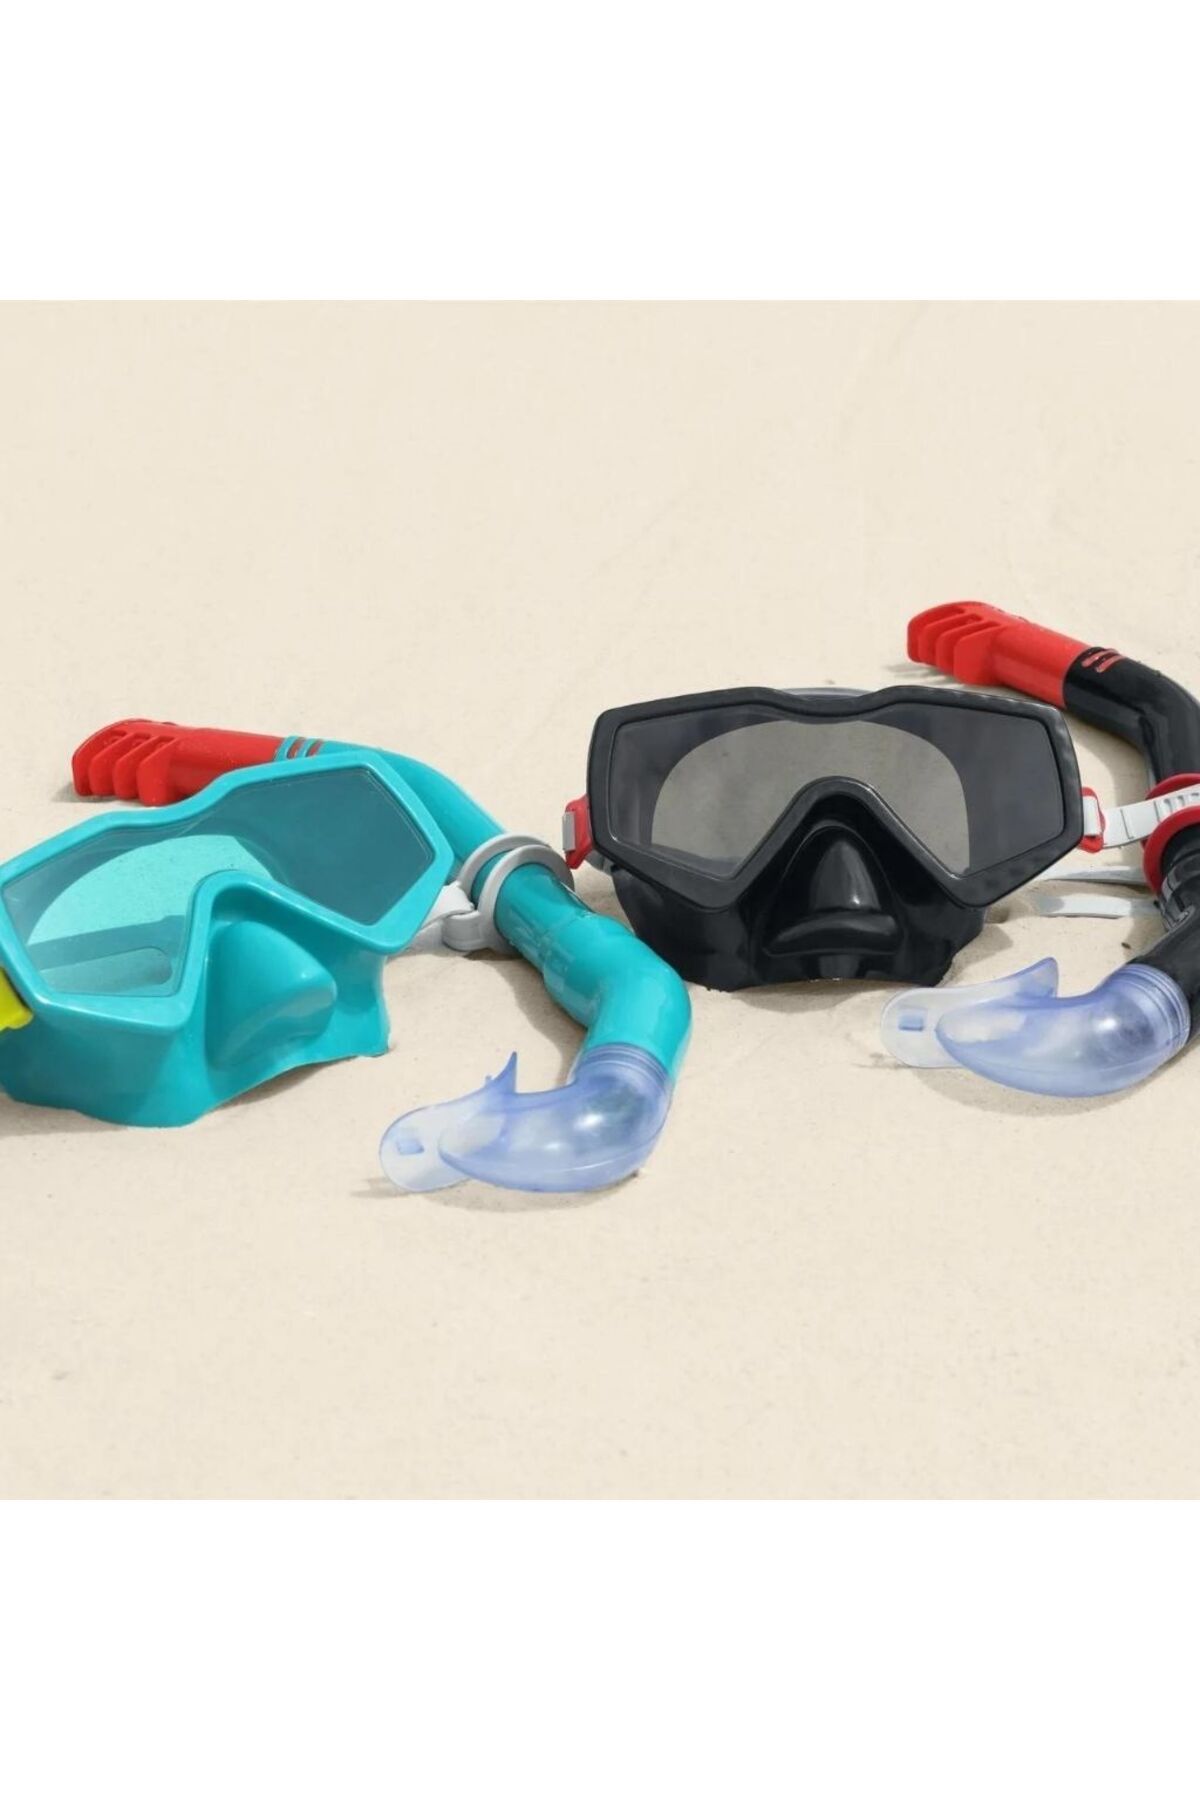 Bestway Yetişkin Prime Essential Şnorkel Set Mavi Renk 14 Yaş Üzeri - Mavi Su Dünyası